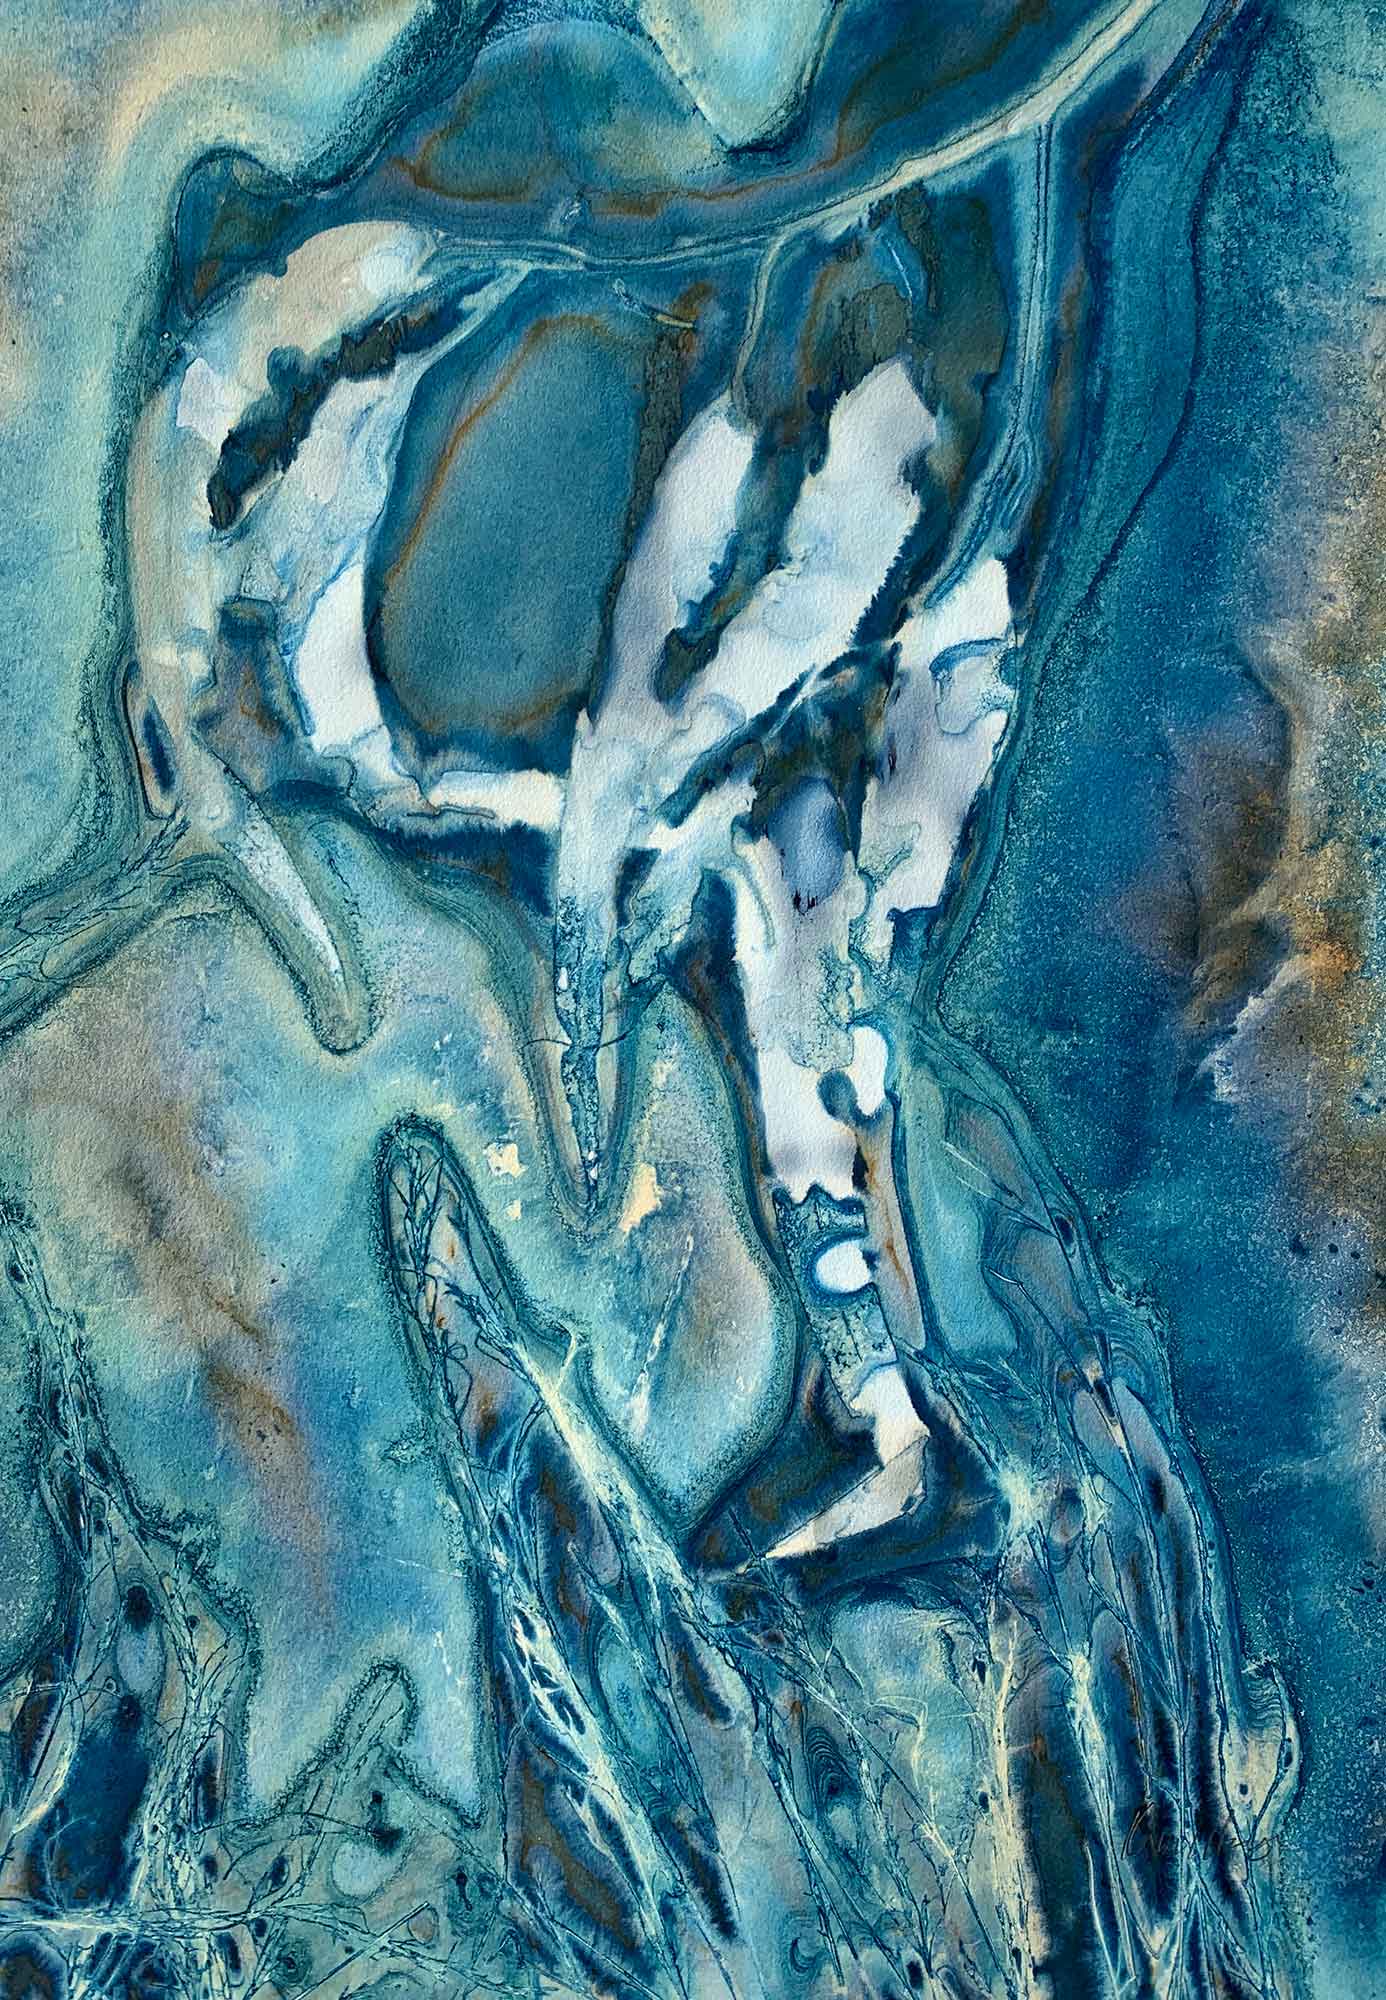 The sky through the eucalyptus III - Kim Herringe, wet cyanotype